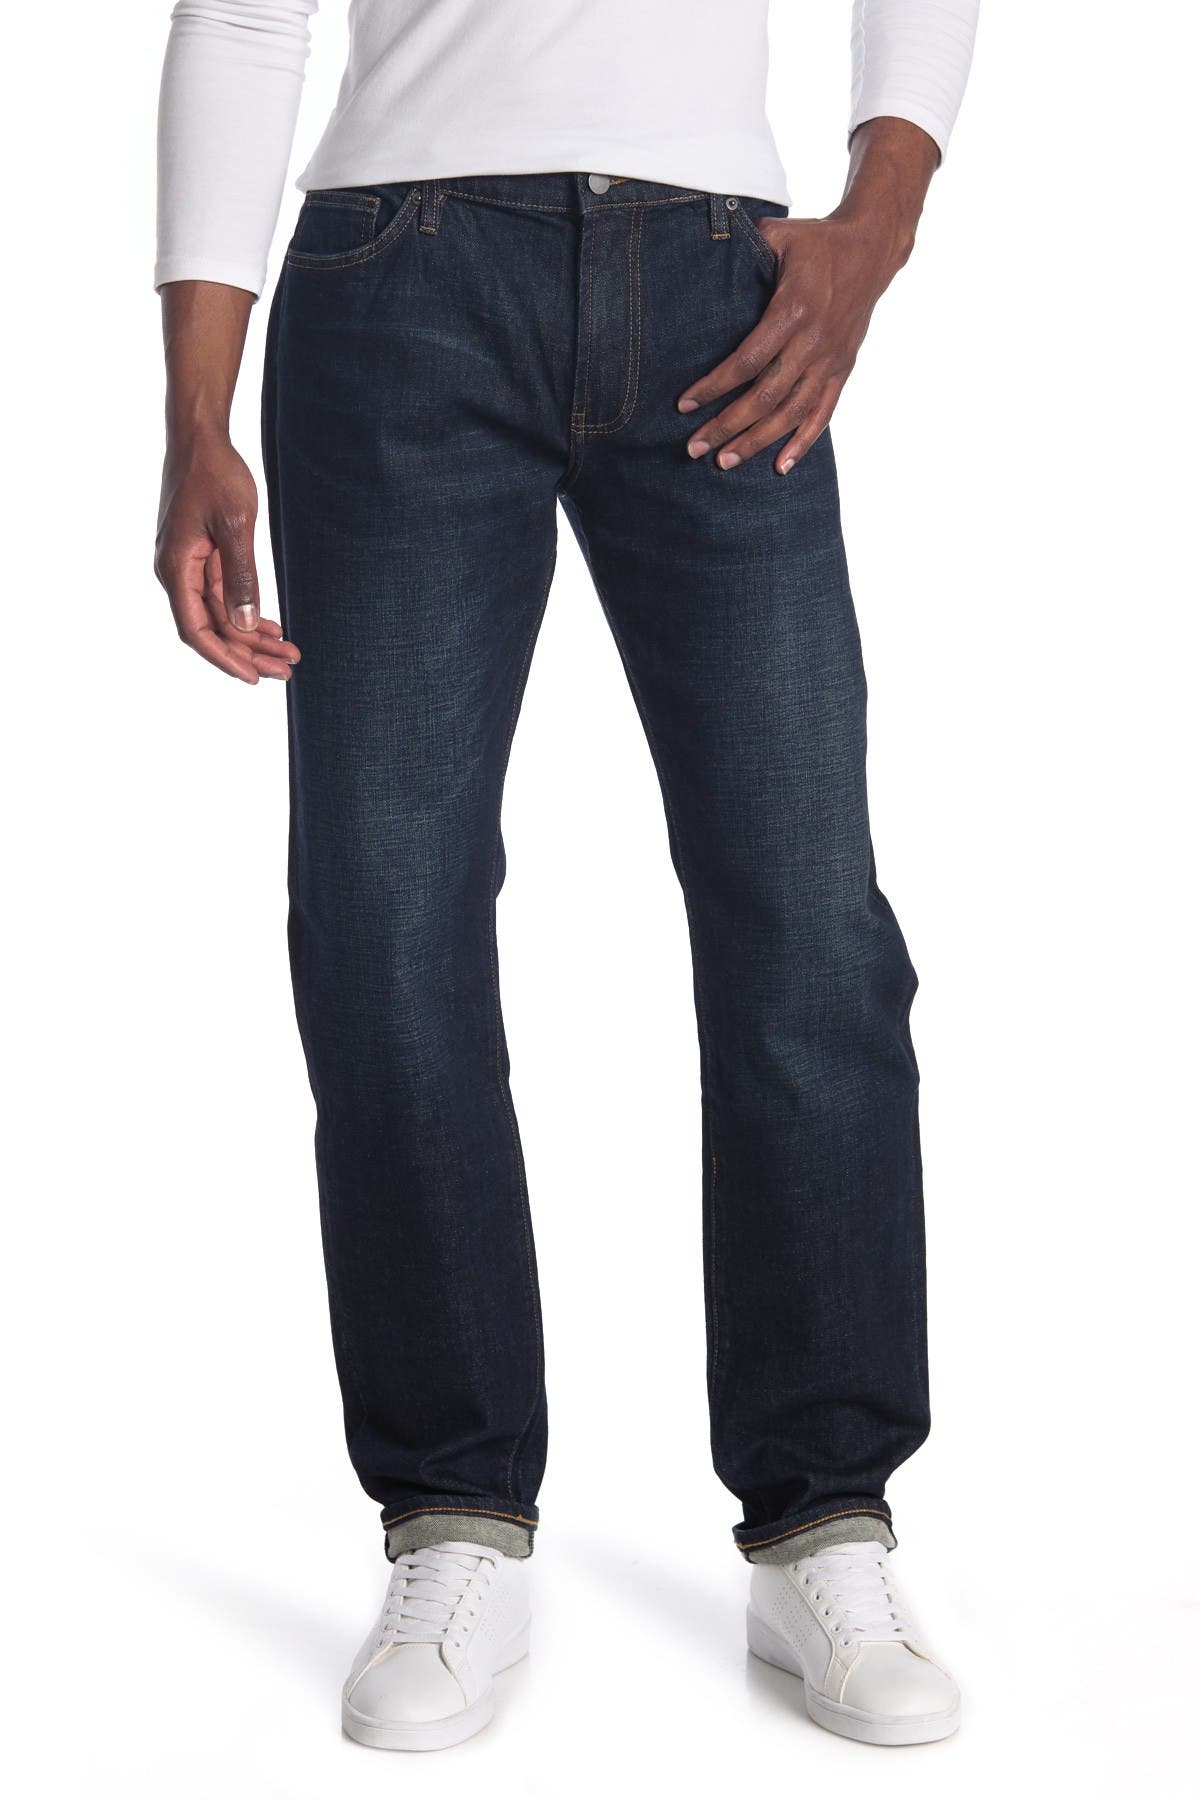 oliver logan jeans